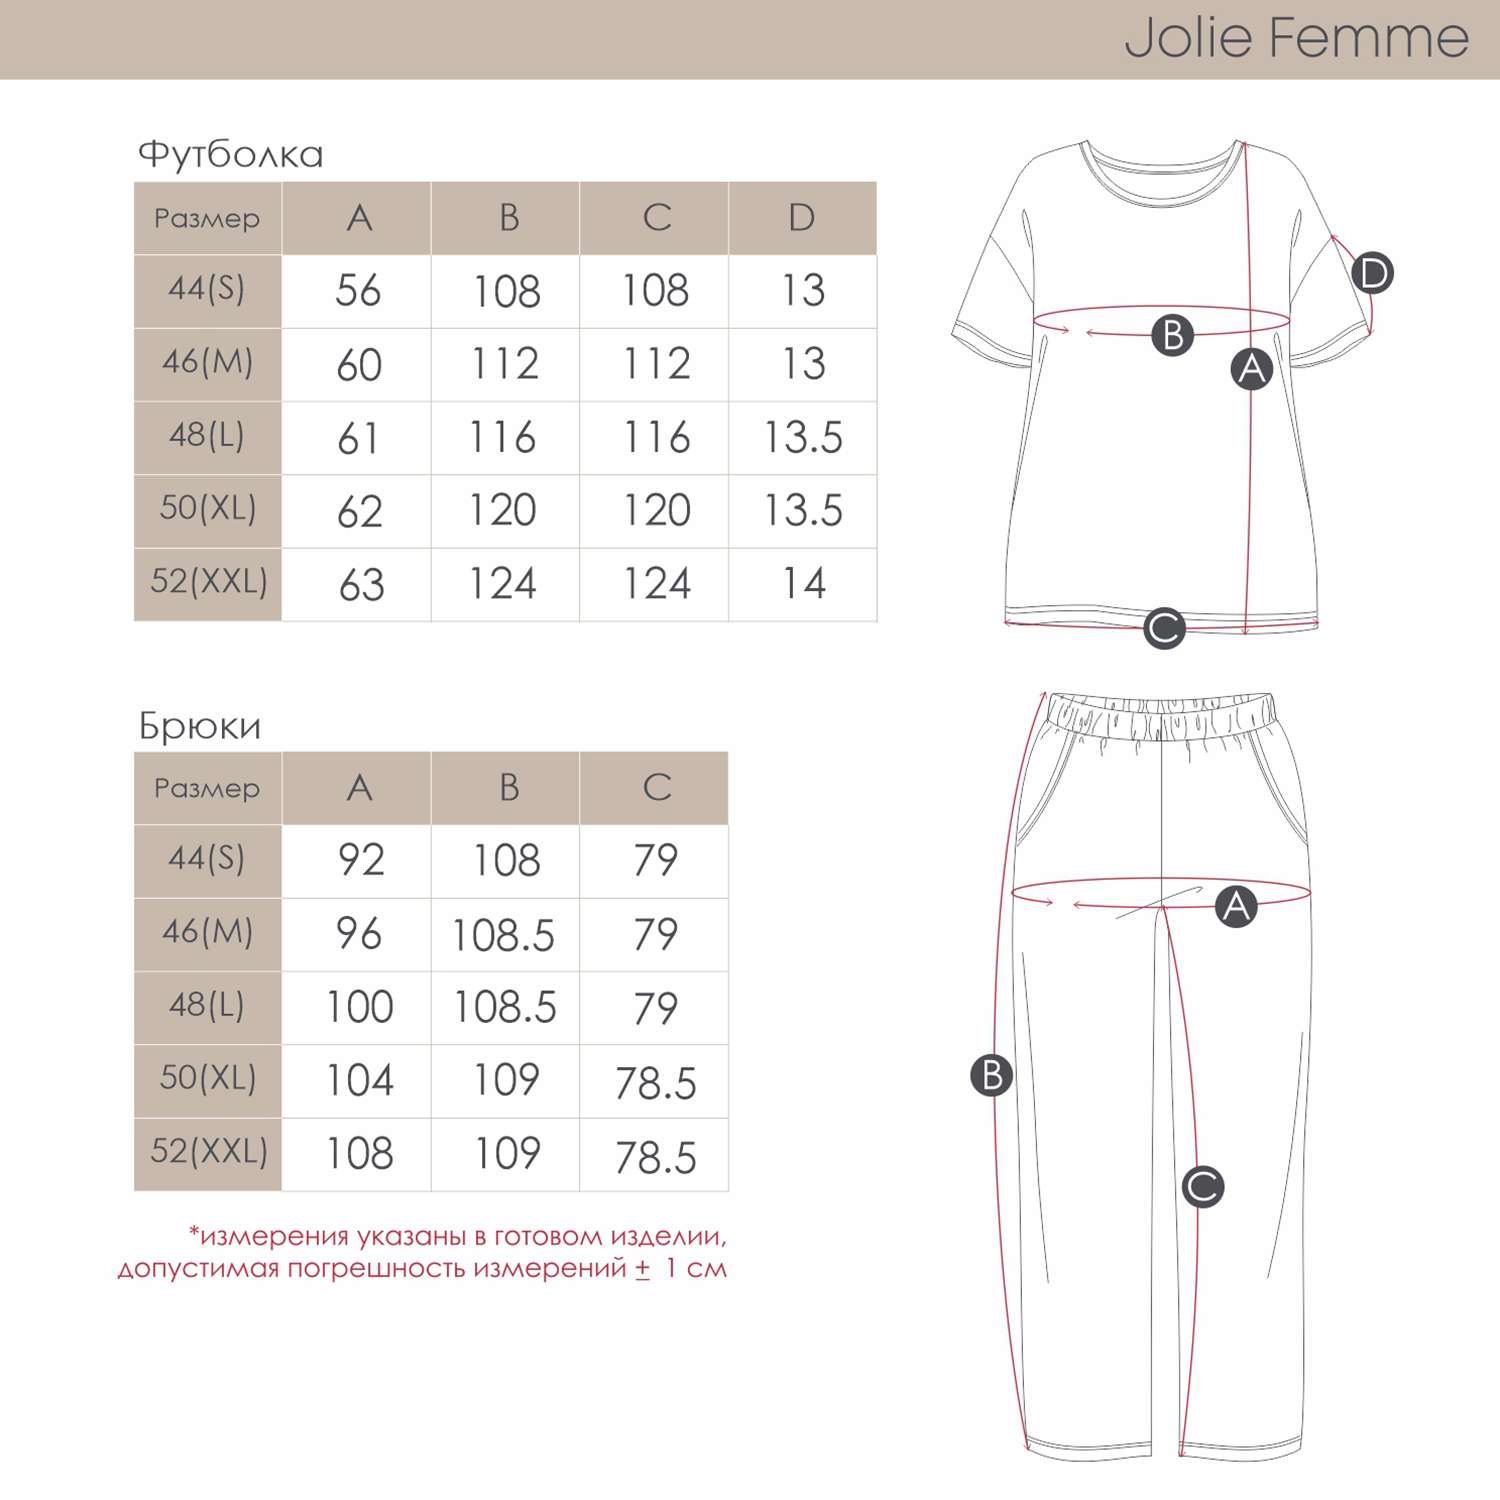 Пижама Jolie Femme J067/036/gr - фото 4